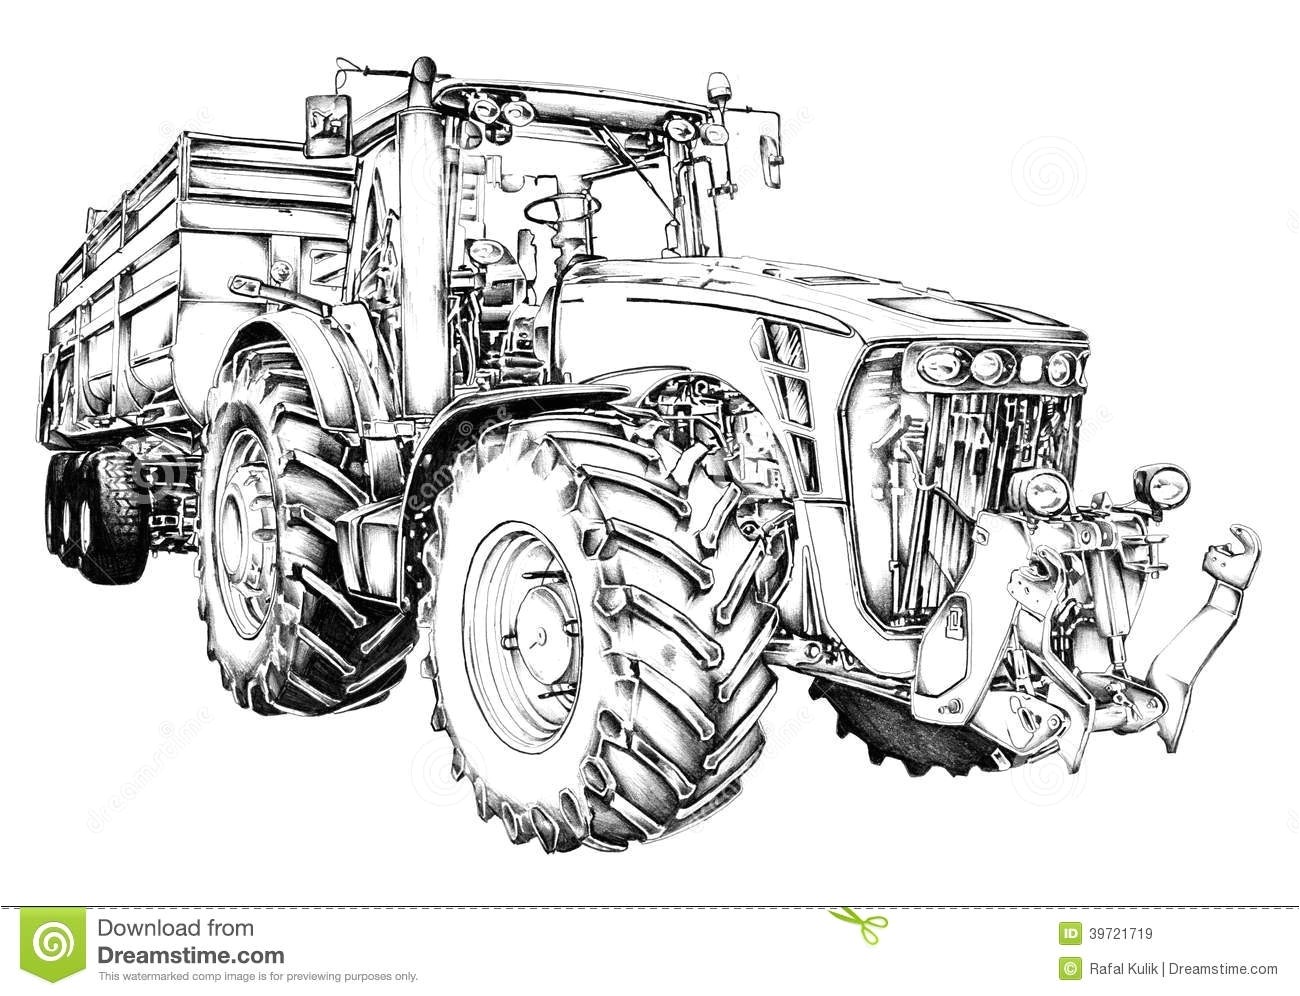 A Imprimer Download Coloriage Dessin D art D illustration De Tracteur Agricole Illustration se rapportant Tracteur